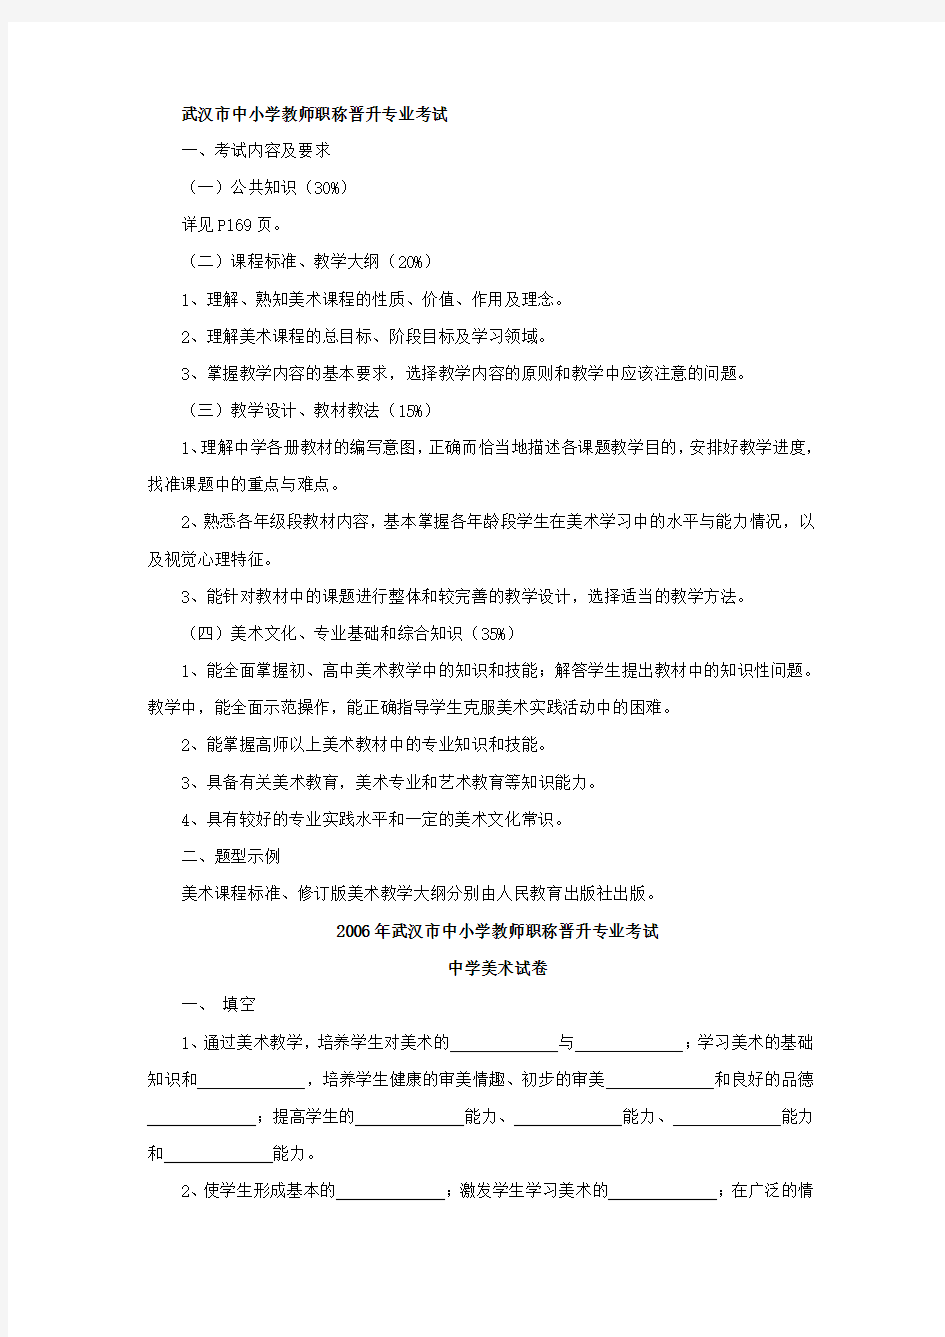 武汉市中小学教师职称晋升专业考试